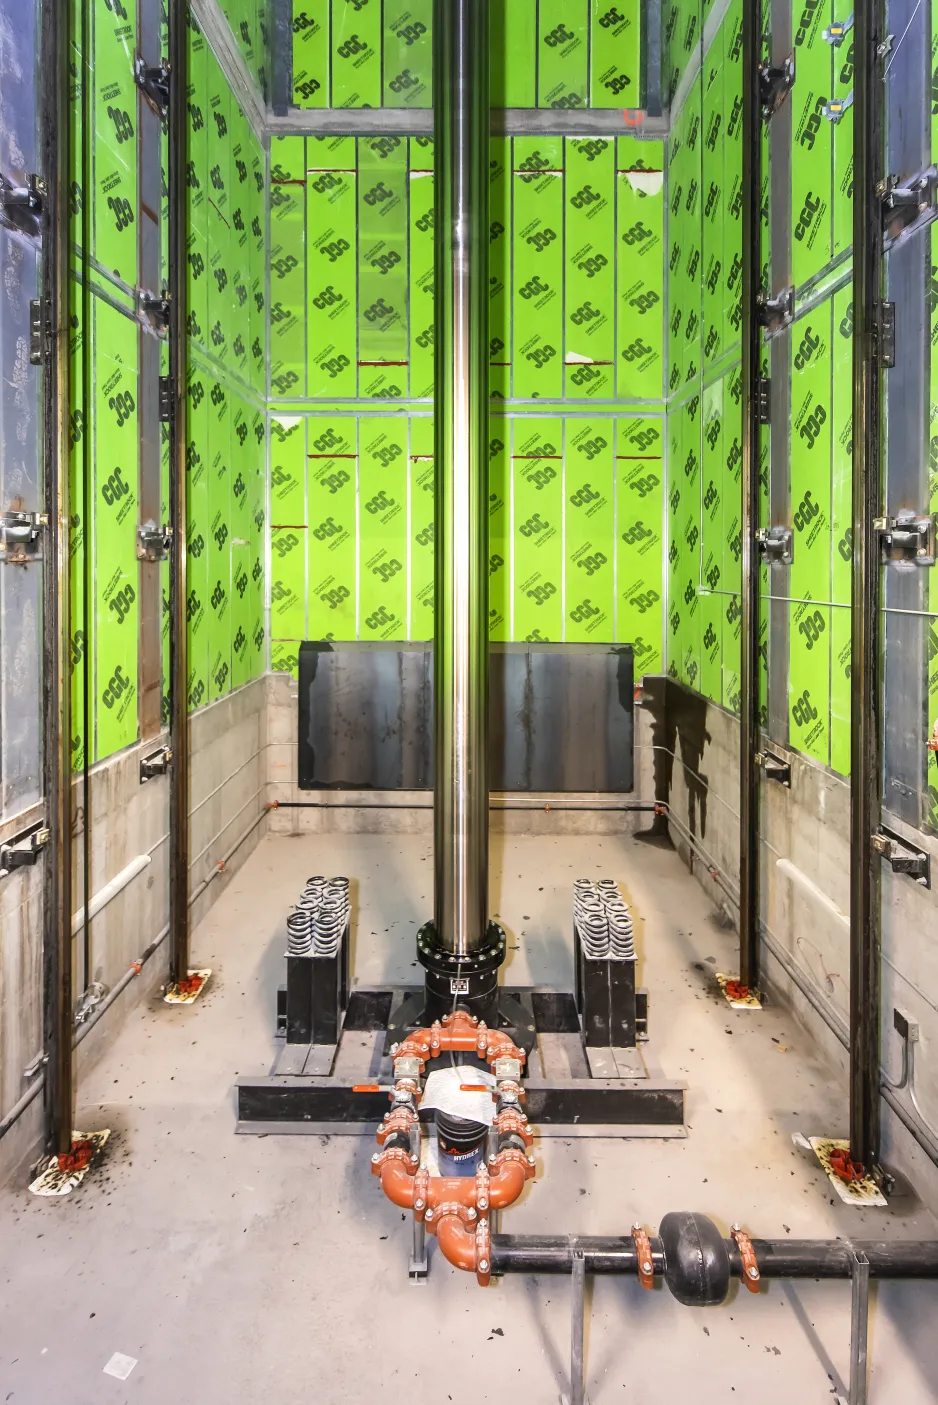 Vue de l’intérieur de la cage du monte-charge, qui est un volume rectangulaire aux murs vert vif et au centre duquel s’élève une gigantesque colonne en acier.